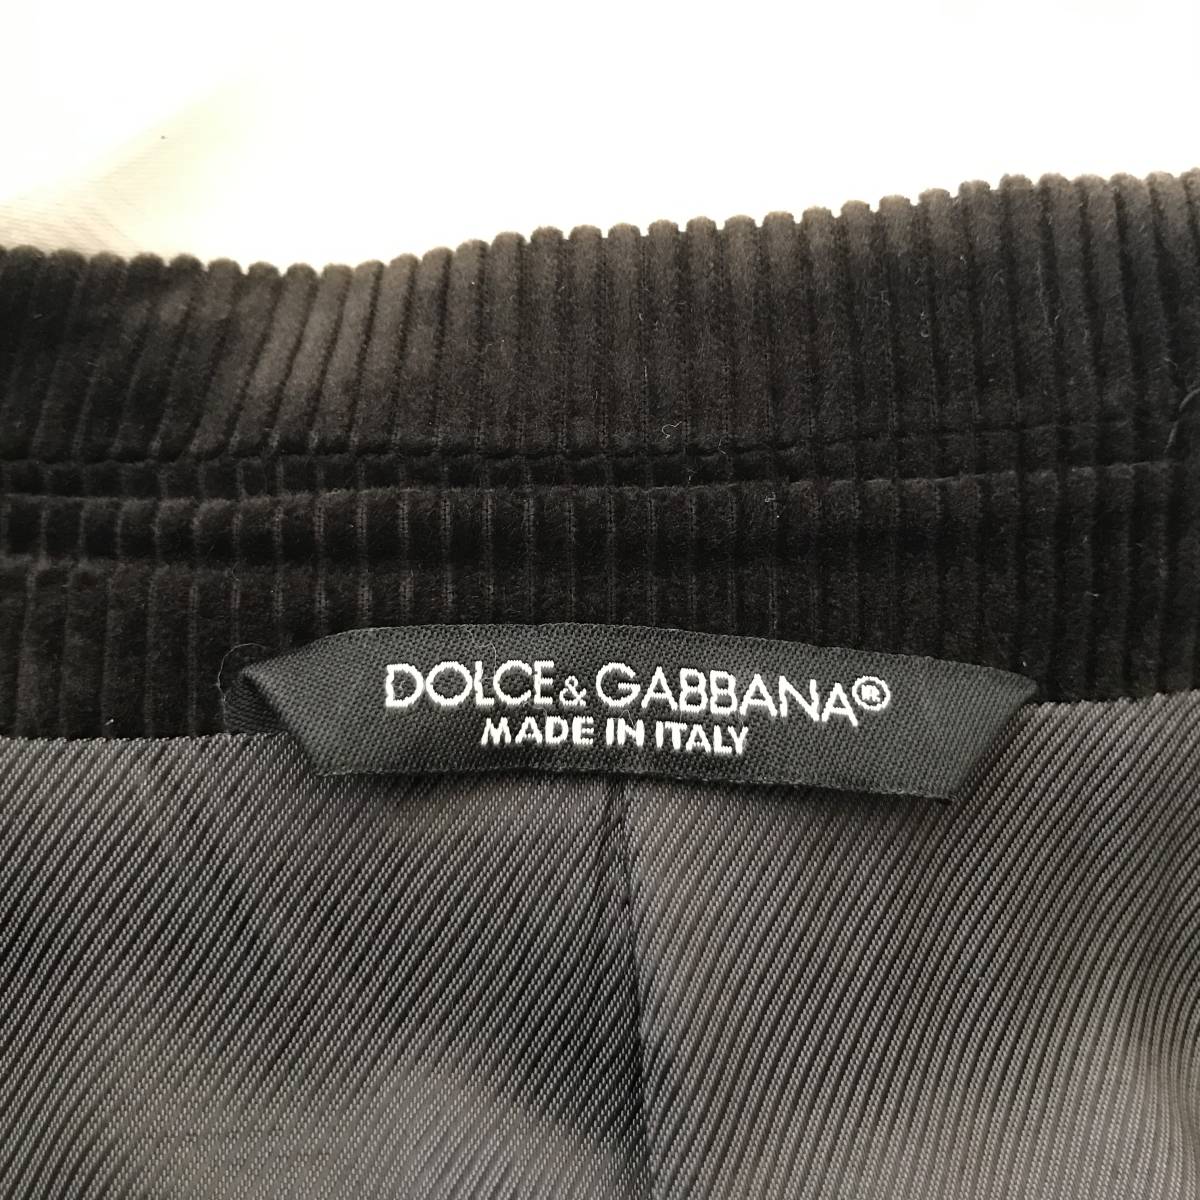 DOLCE&GABBANA LUXURY Dolce & Gabbana люкс Италия производства мужской общий обратная сторона вельвет жакет хорошая вещь size 44